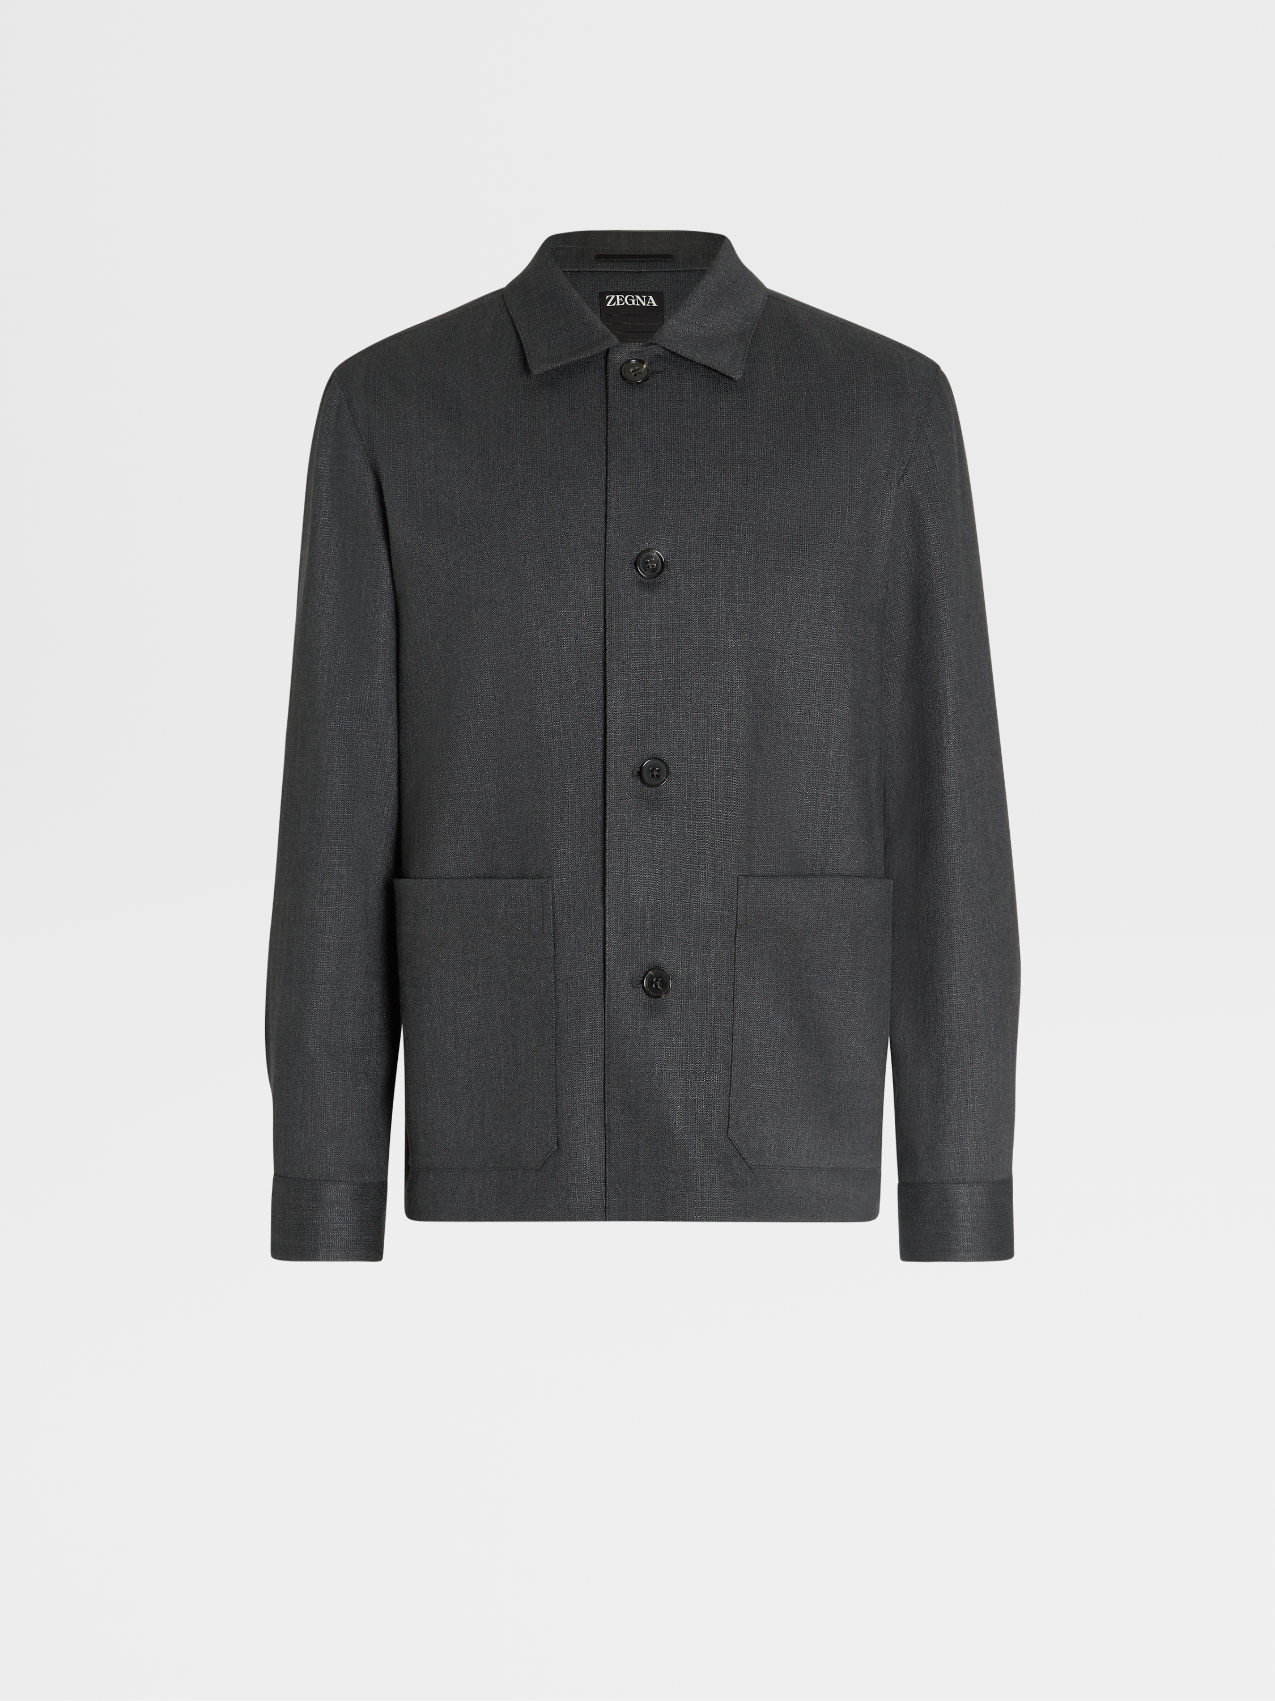 Black Silk and Linen Blend Chore Jacket